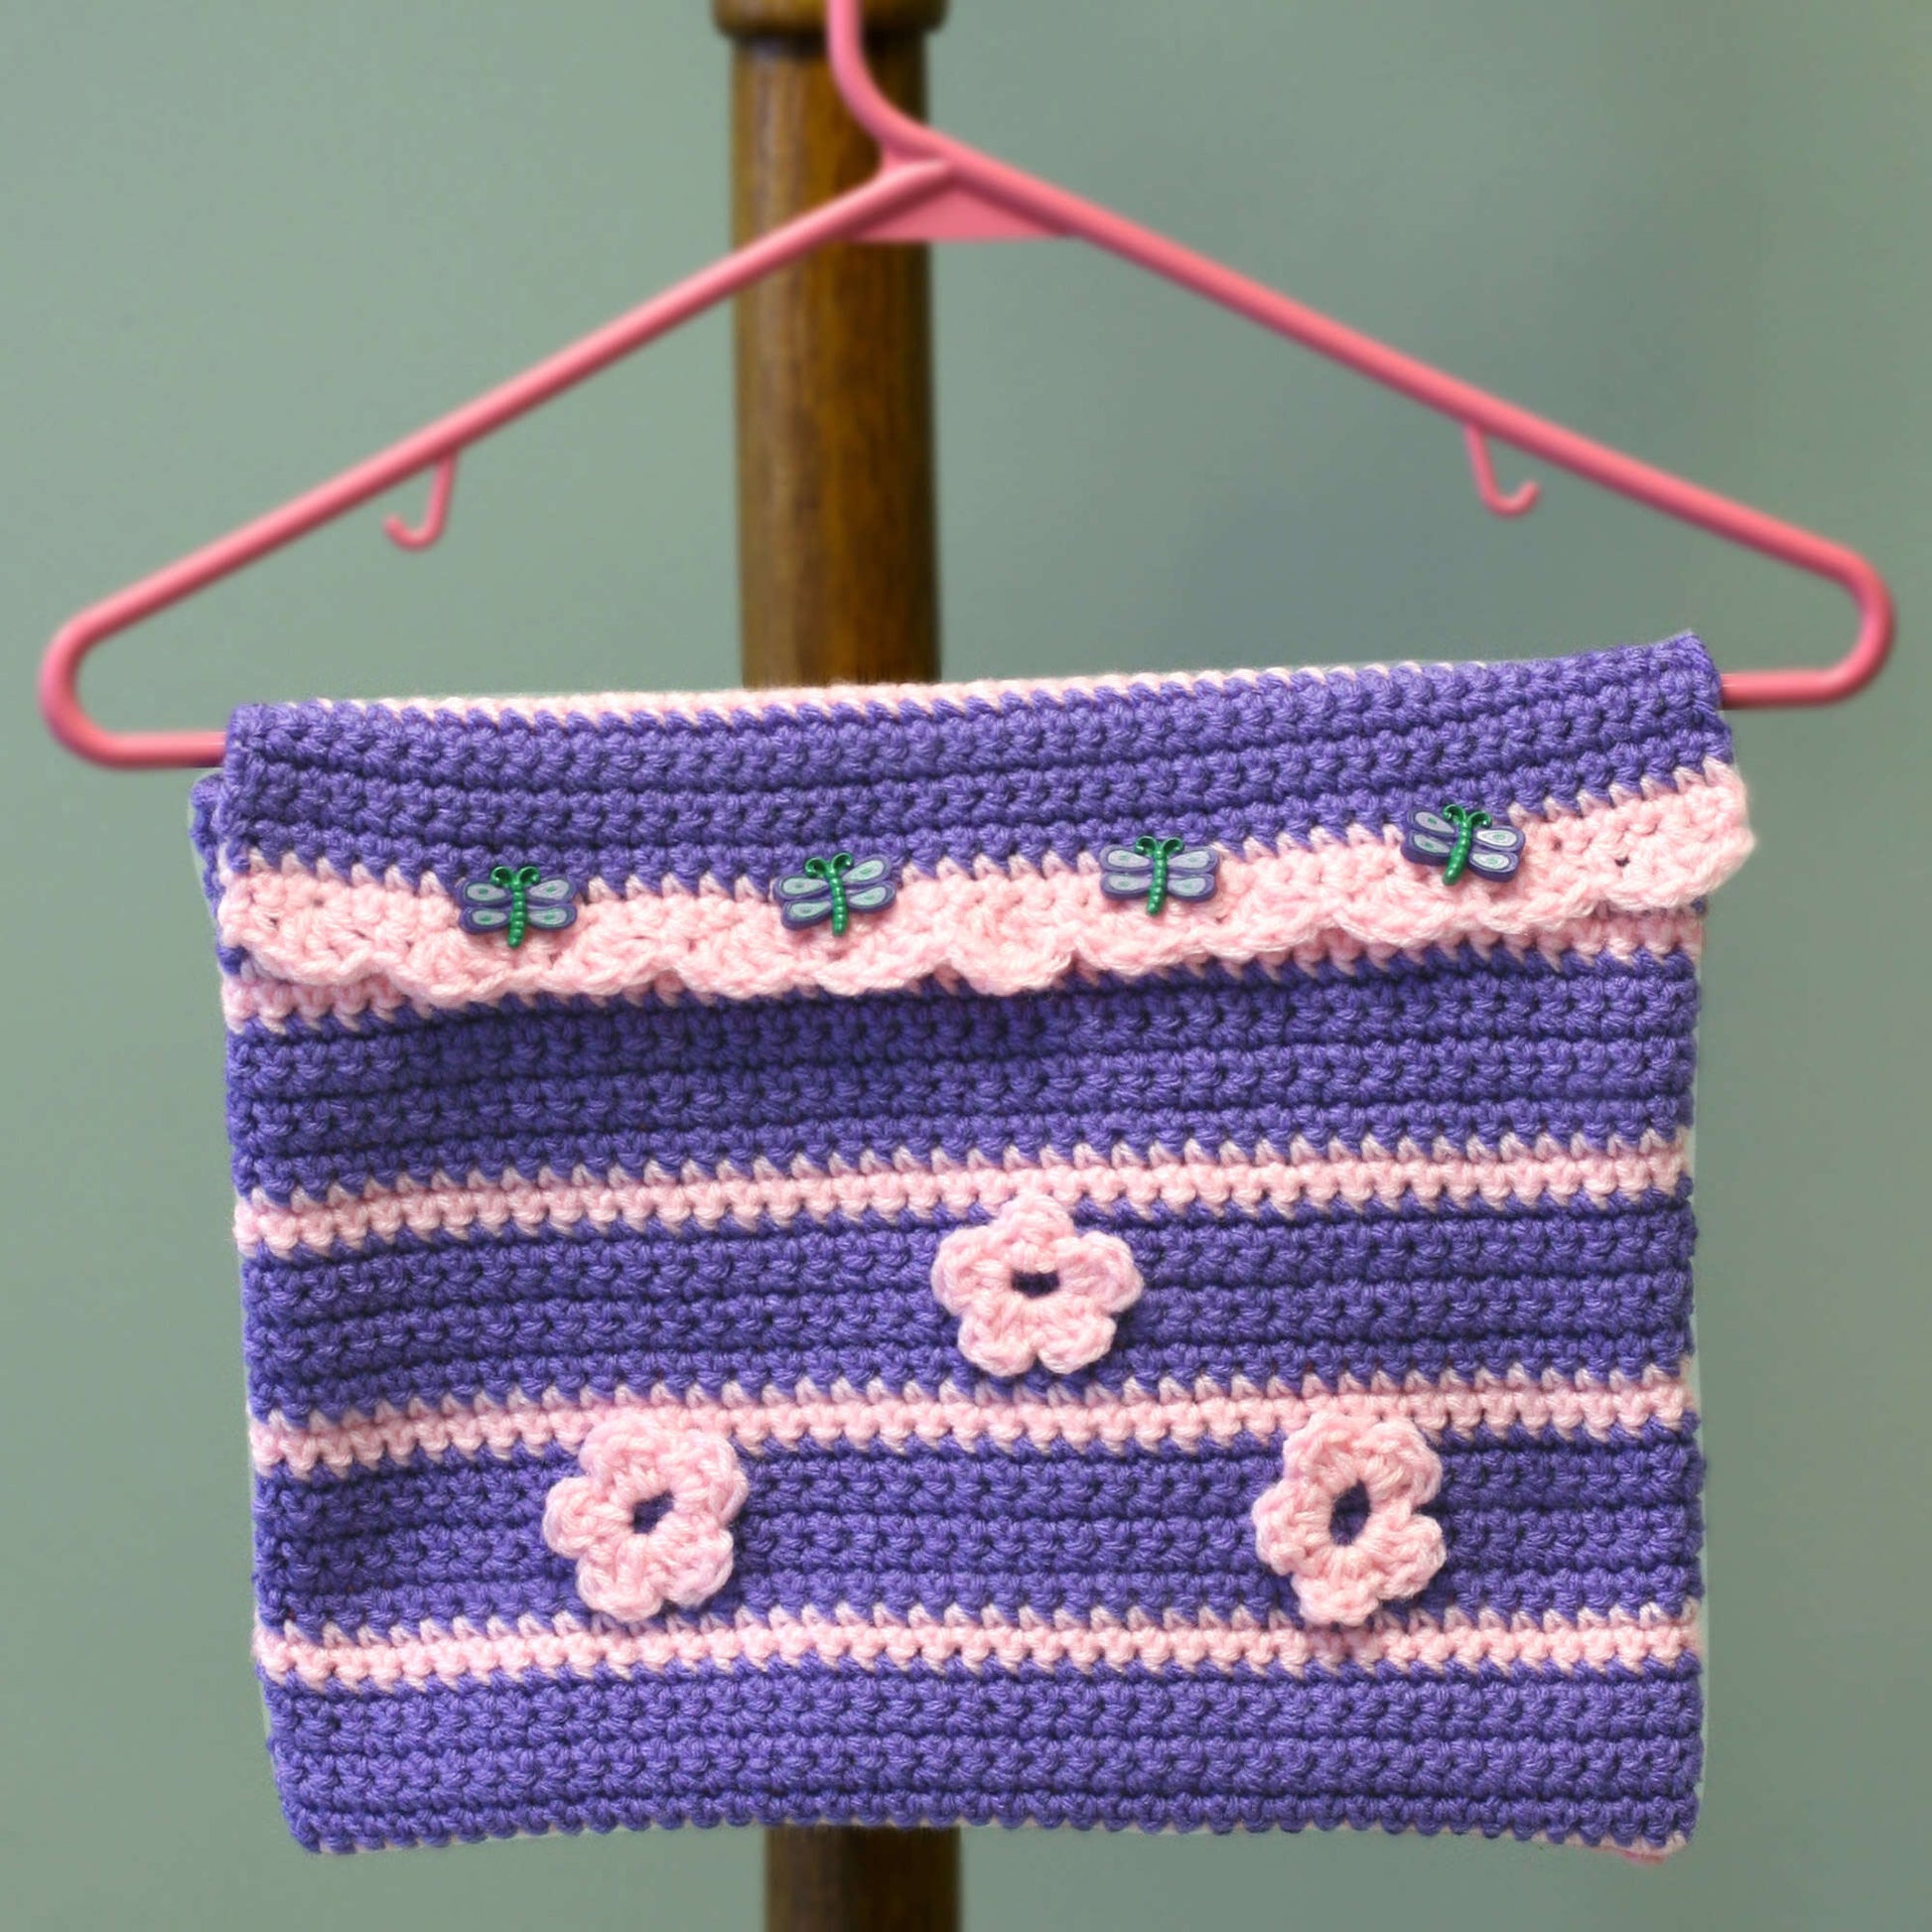 Free Red Heart Going to Grandma's Pocket on Hanger Crochet Pattern